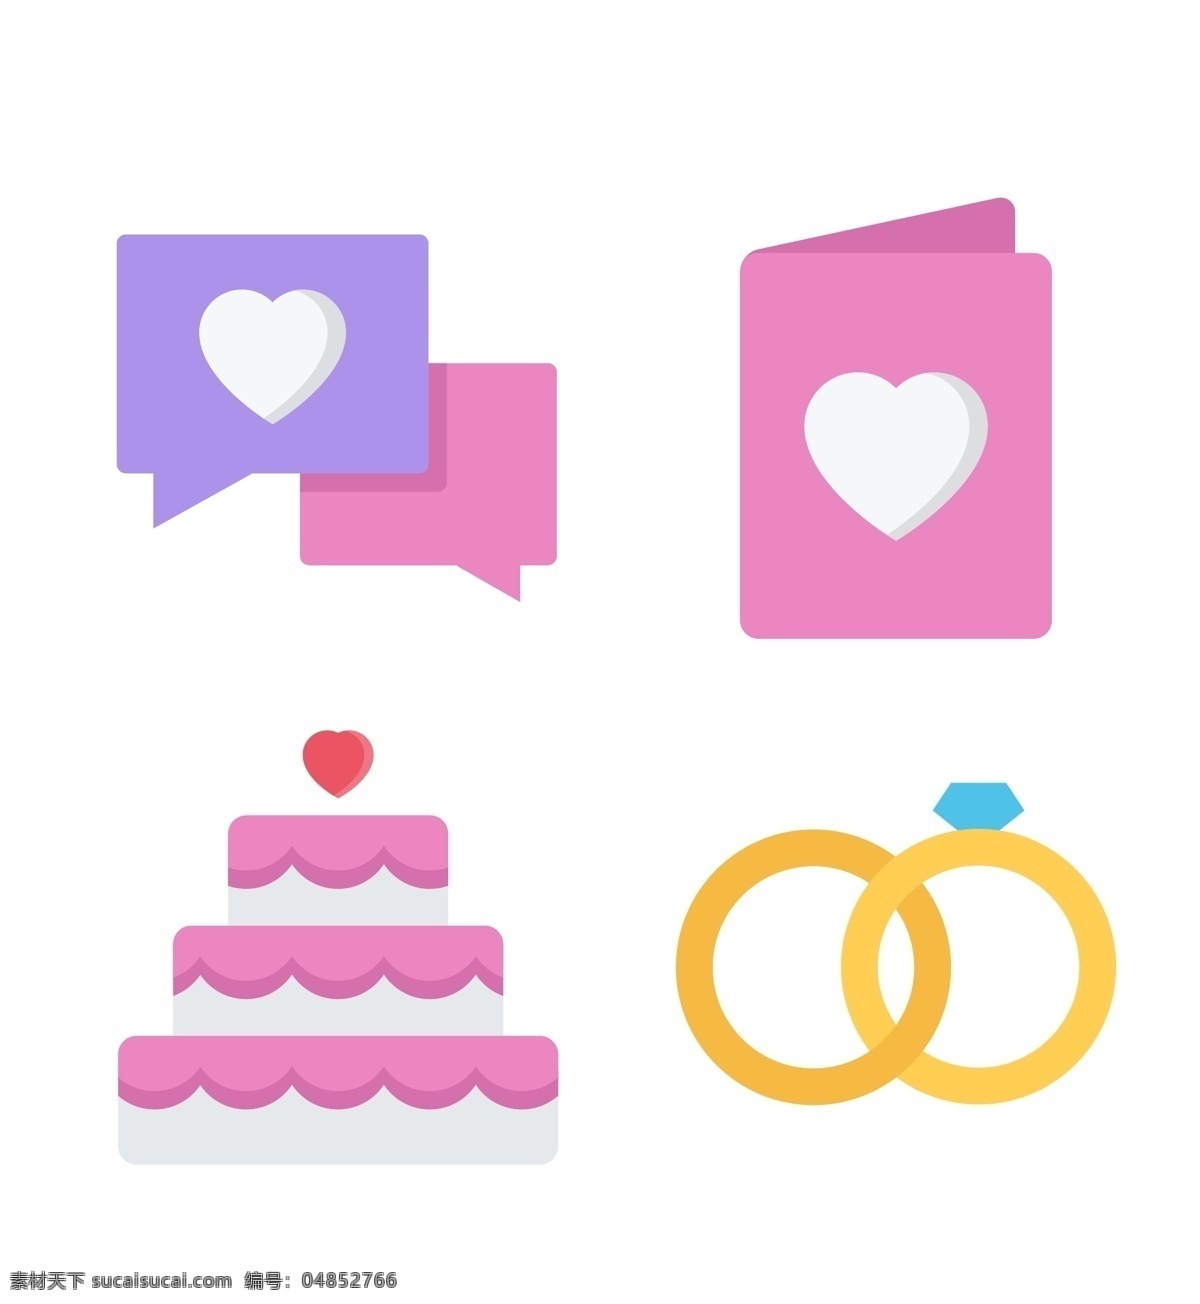 恋爱 icon 图标 标志 图标设计 戒指 钻石 爱心 情书 蛋糕 图标下载 表情图标 迷你图标 通用图标 网页图标